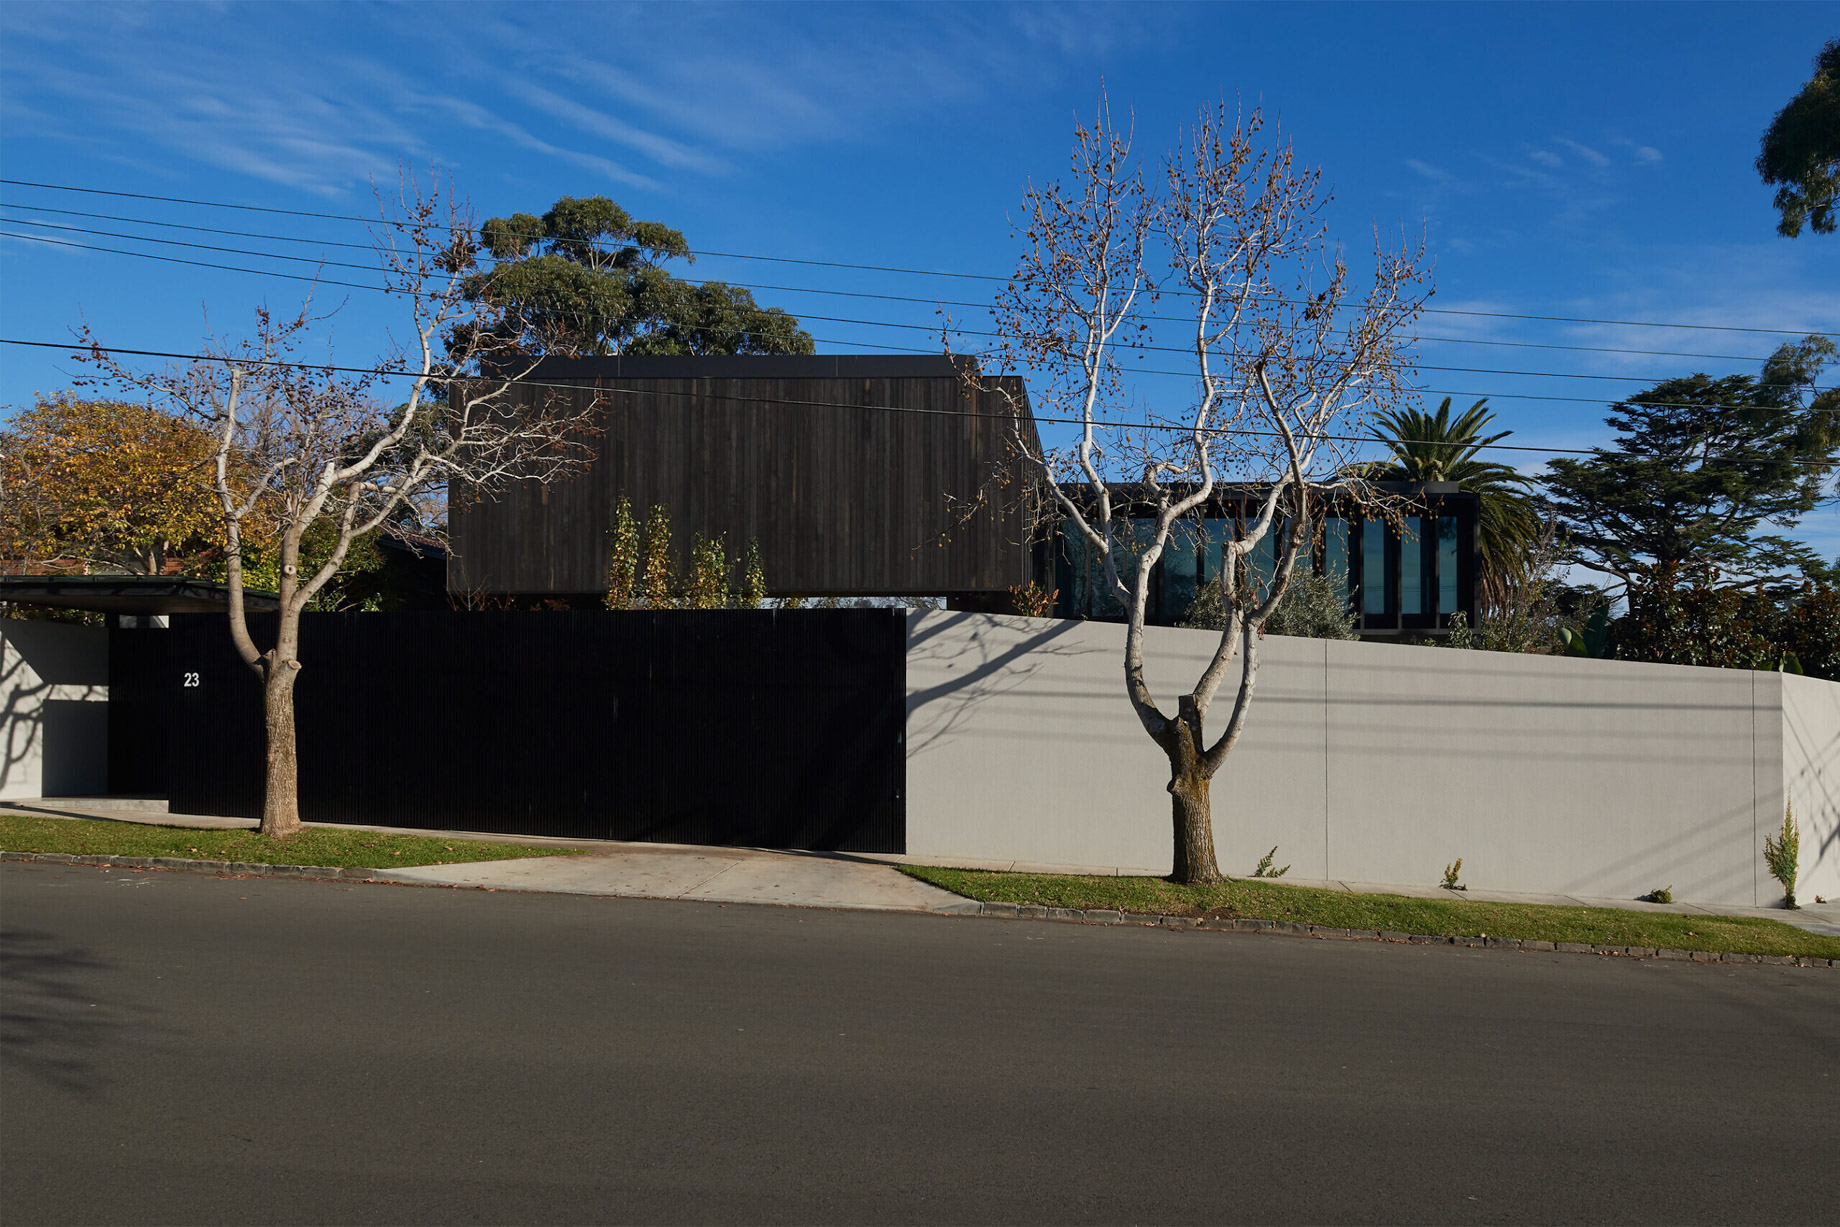 ANM House Hopetoun Residence – Toorak, Melbourne, Australia